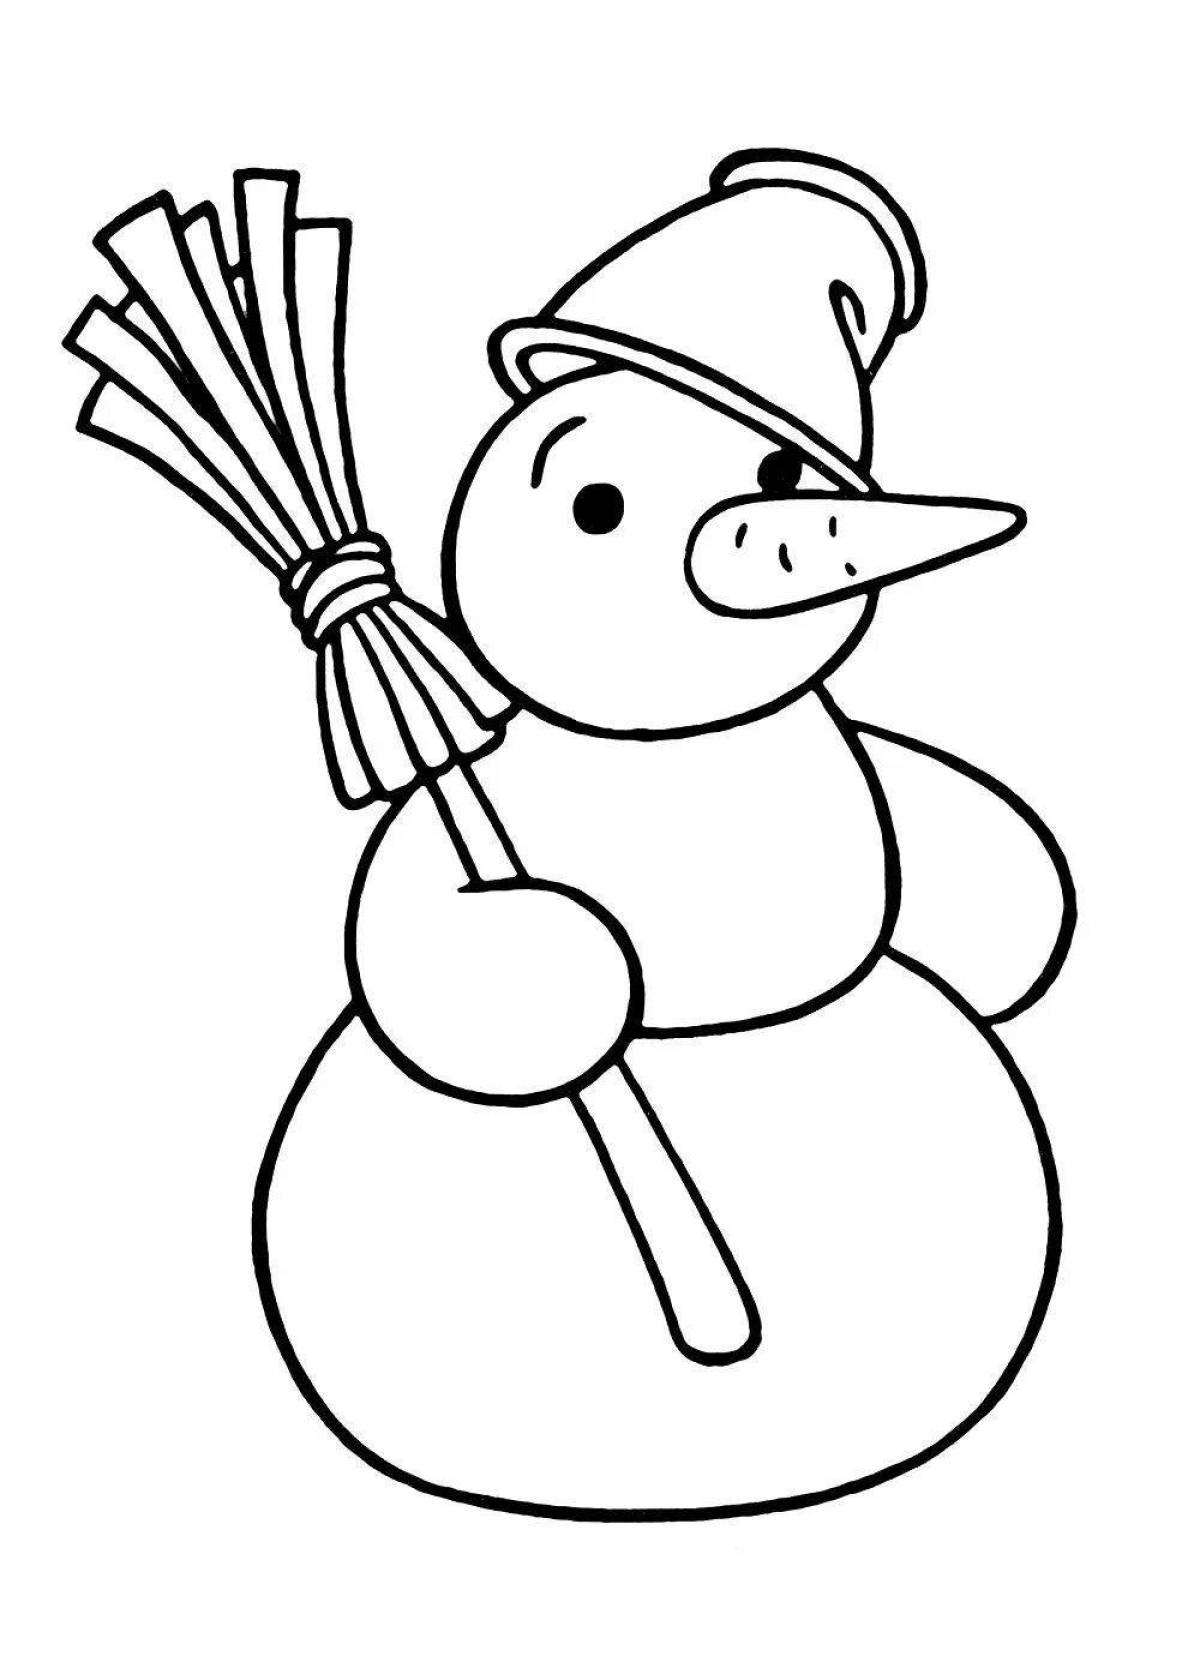 Юмористическая раскраска снеговик с метлой